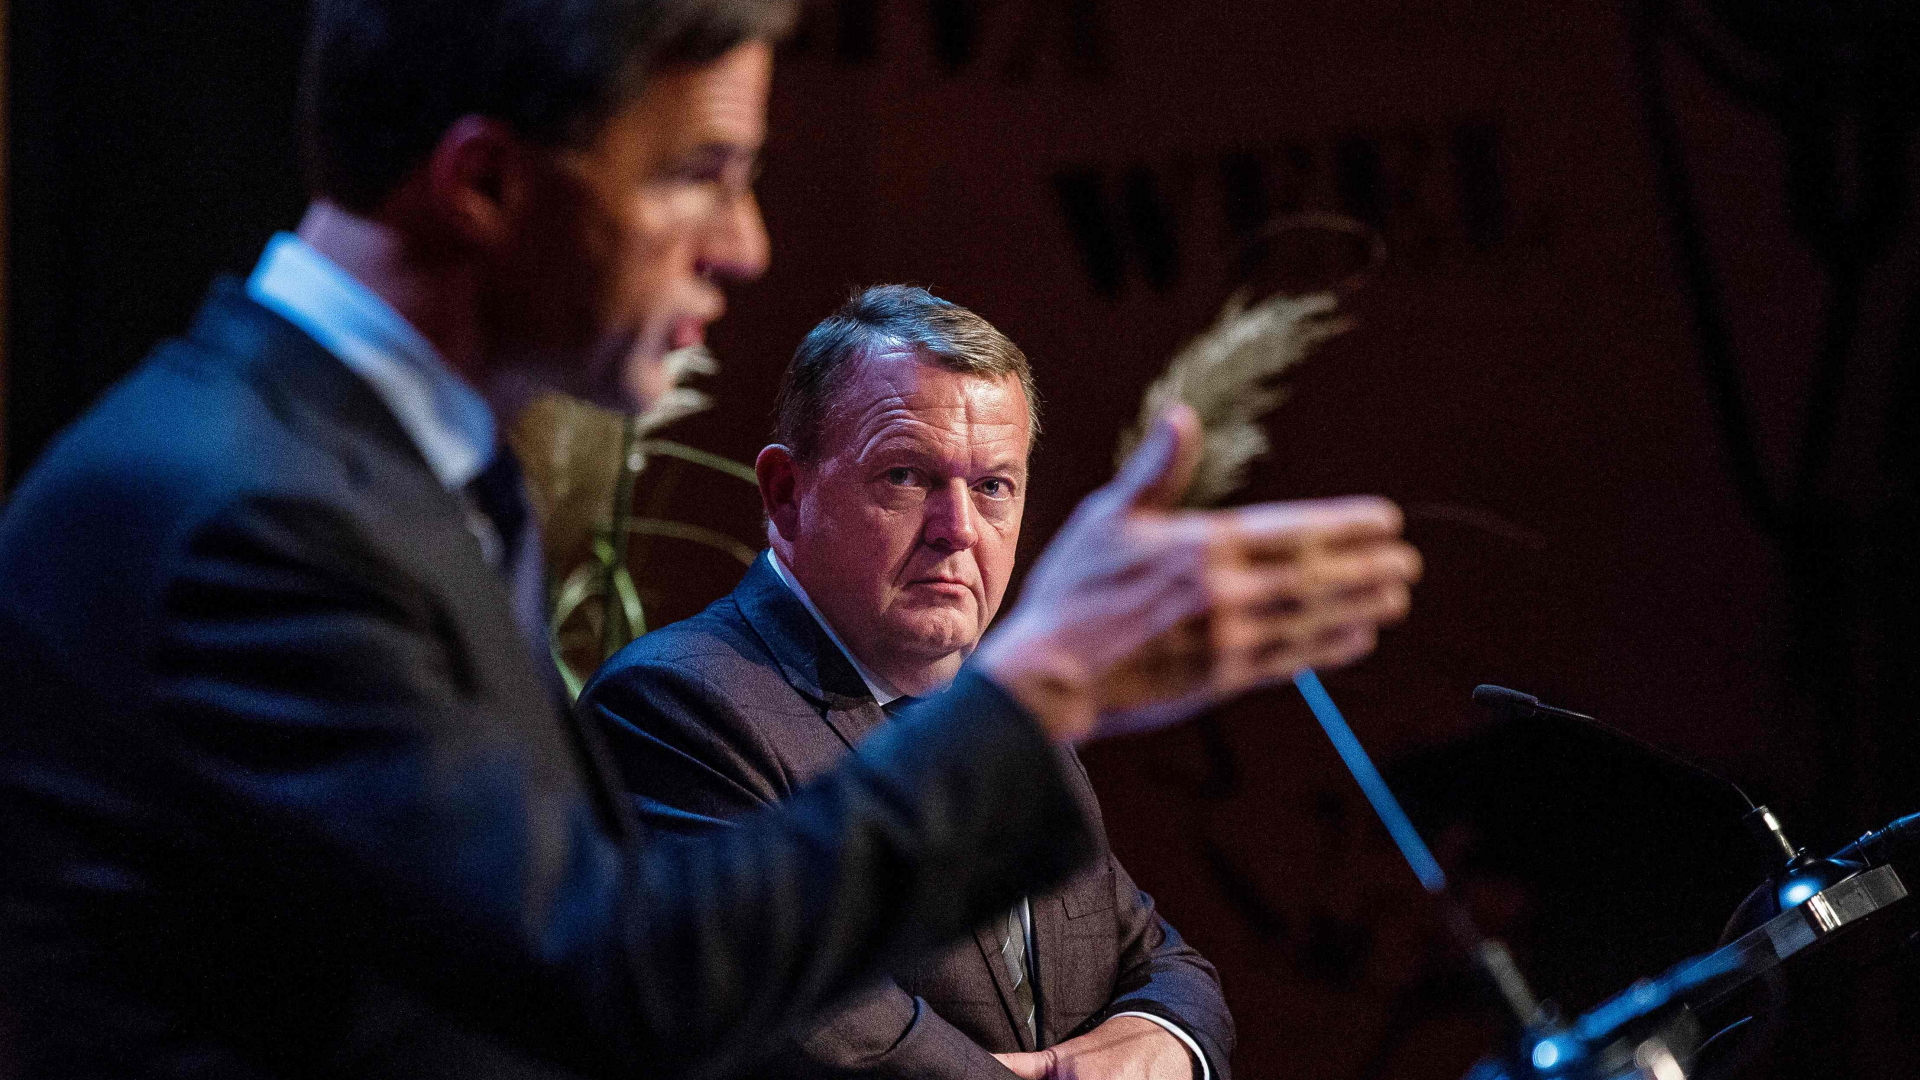 Der niederländische Premier Rutte und sein dänischer Amtskollege Lökke Rasmussen | AFP